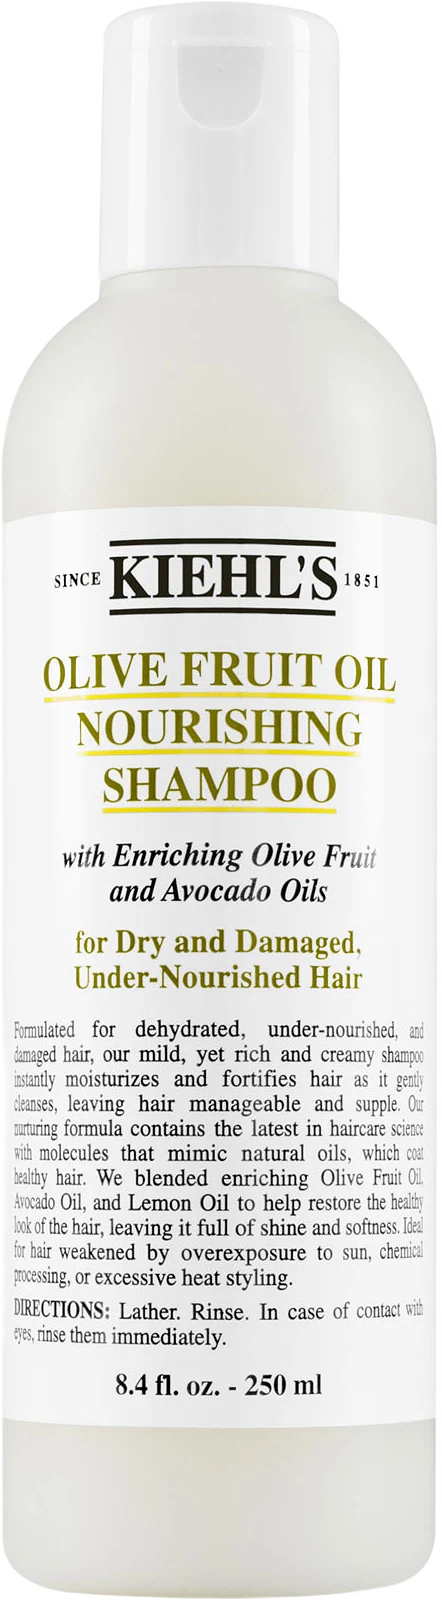 Olive Fruit Oil Nourishing Shampoo